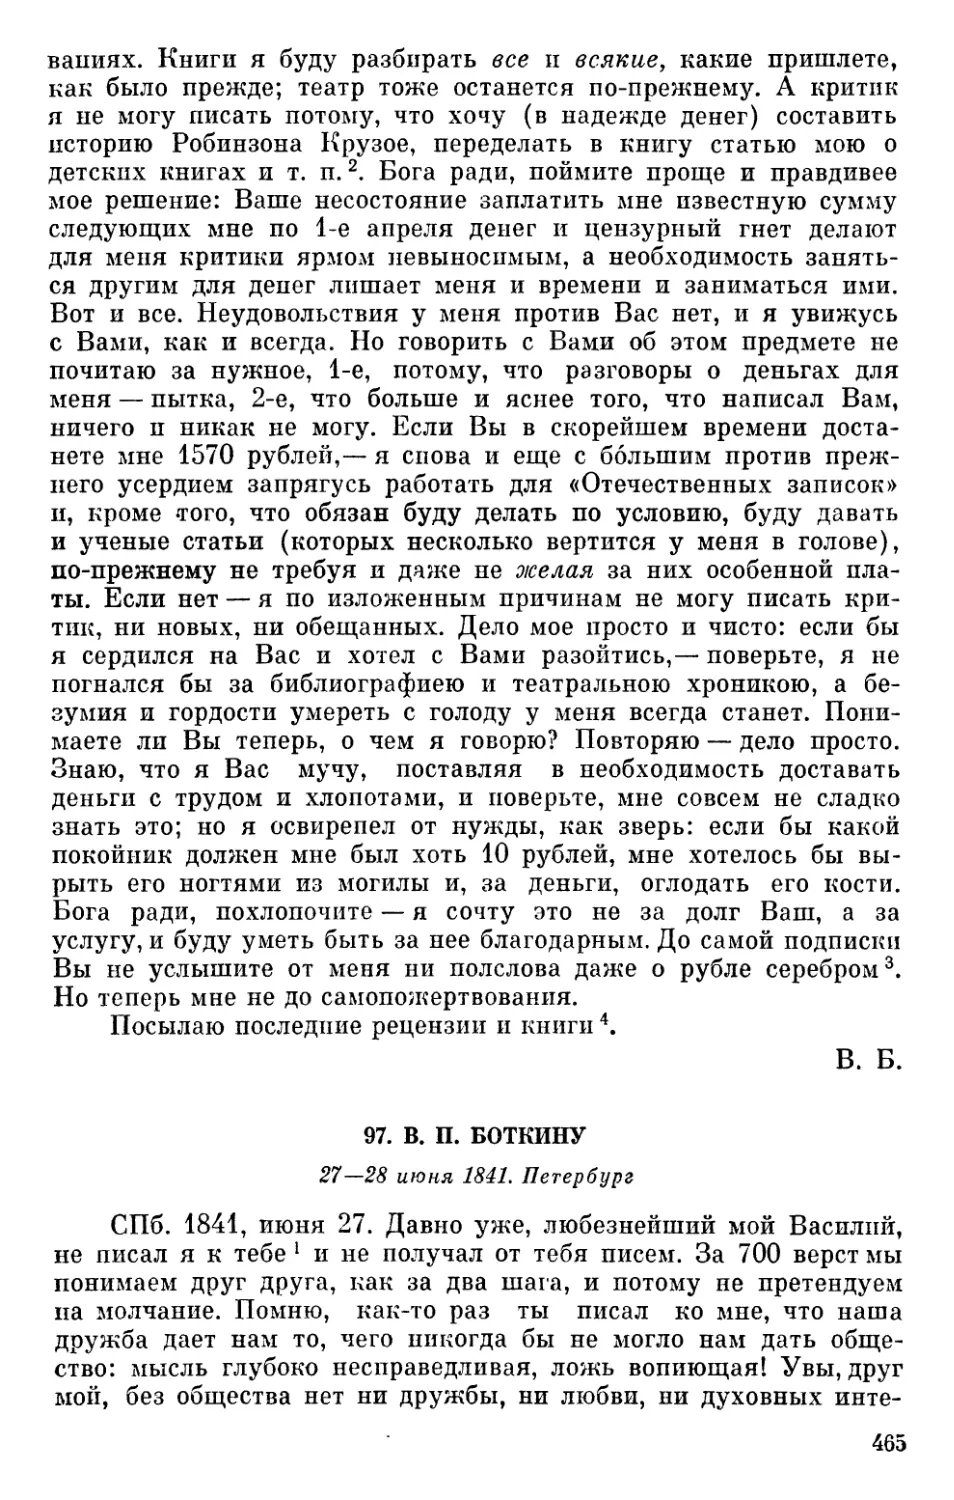 97. В. П. Боткину. 27—28 июня 1841